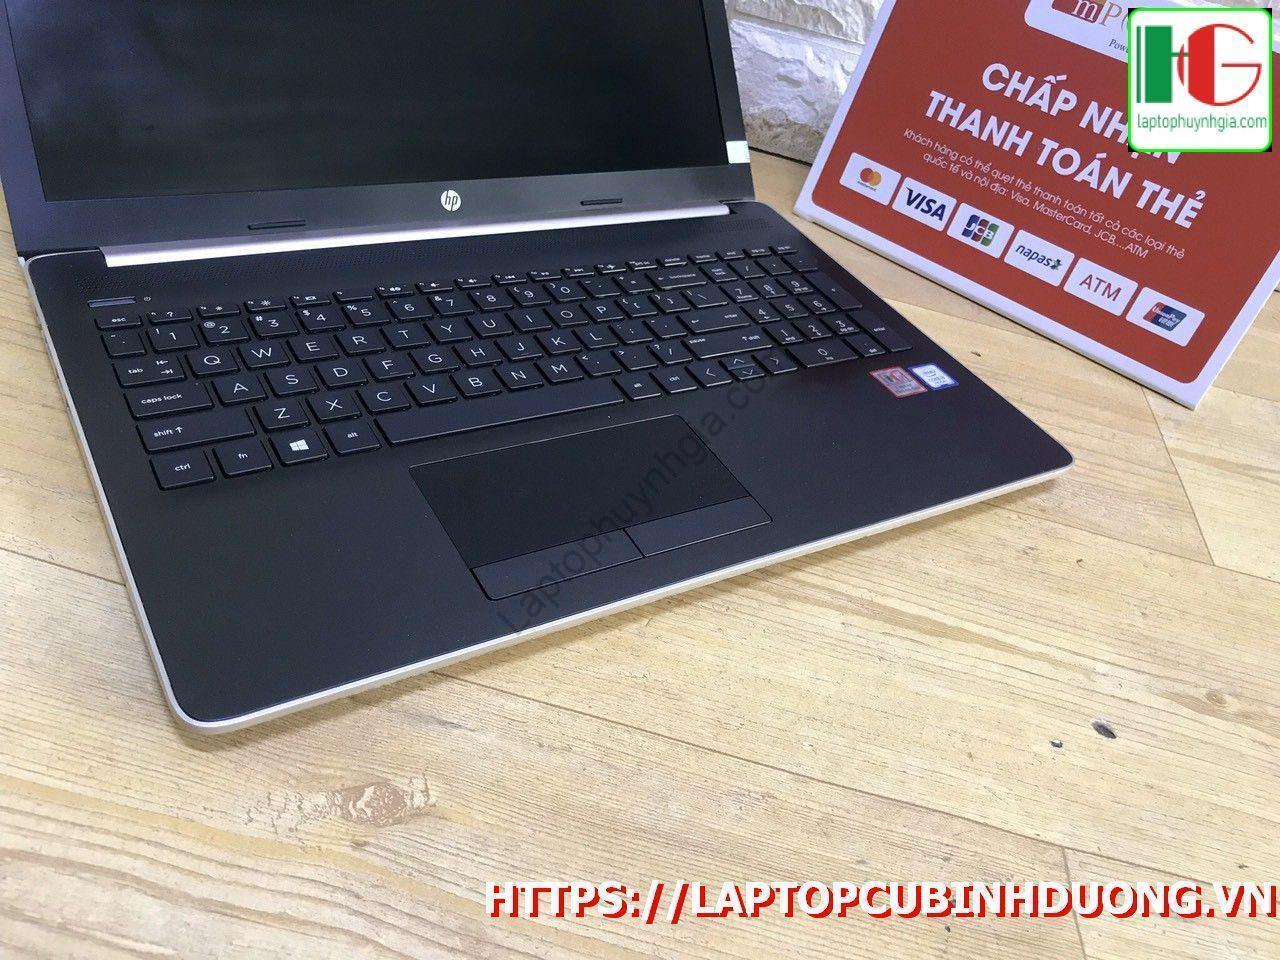 Laptop Hp 15 I3 7020u 4g 500g Lcd 15 Full Laptopcubinhduong.vn 5 [kích Thước Gốc] Result